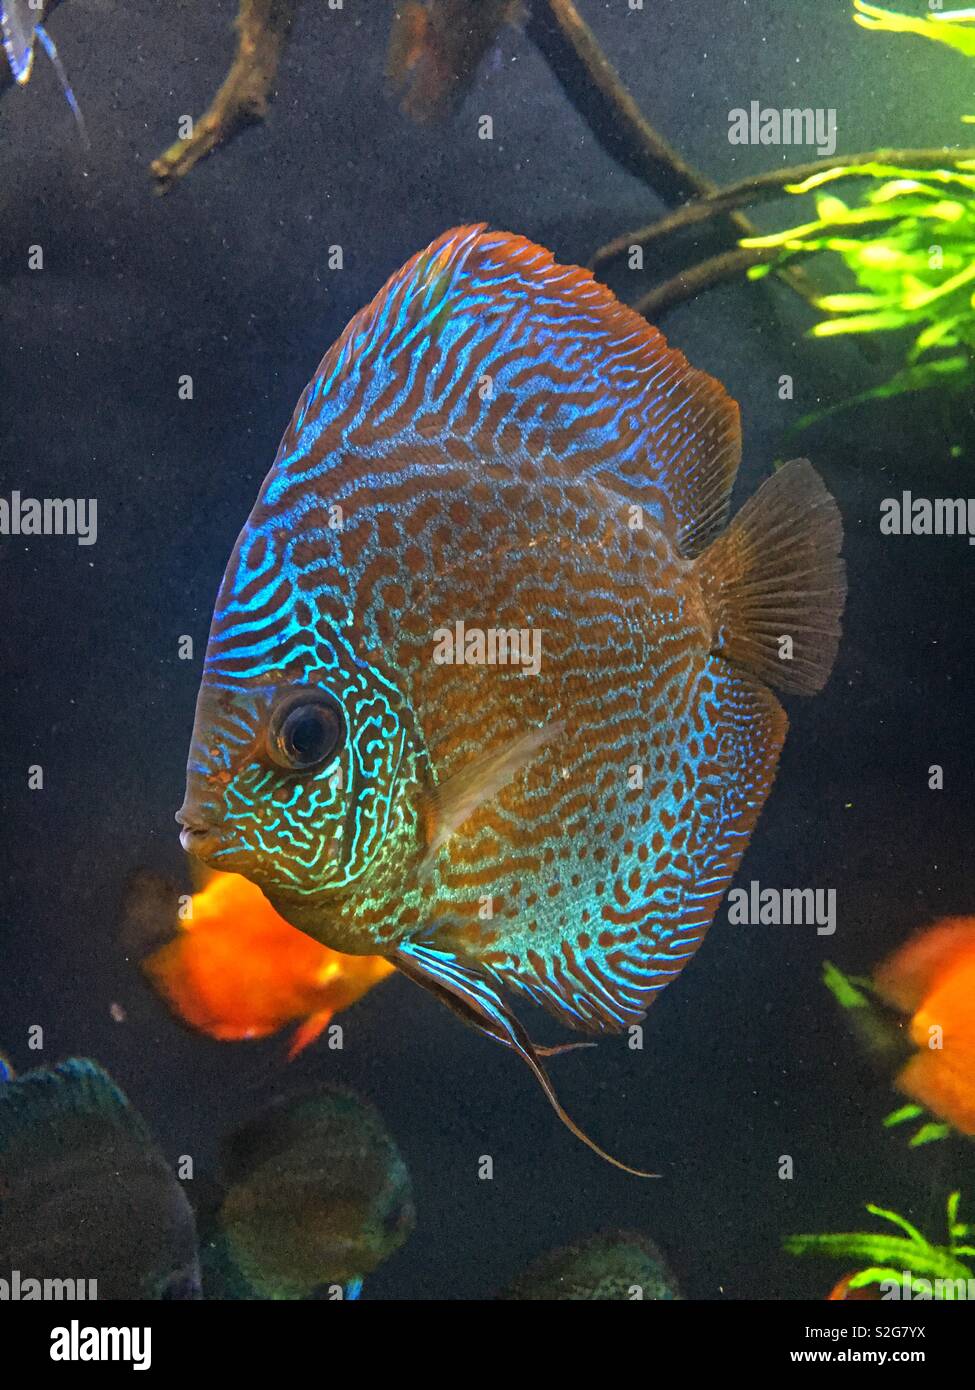 Pesce fluorescente immagini e fotografie stock ad alta risoluzione - Alamy